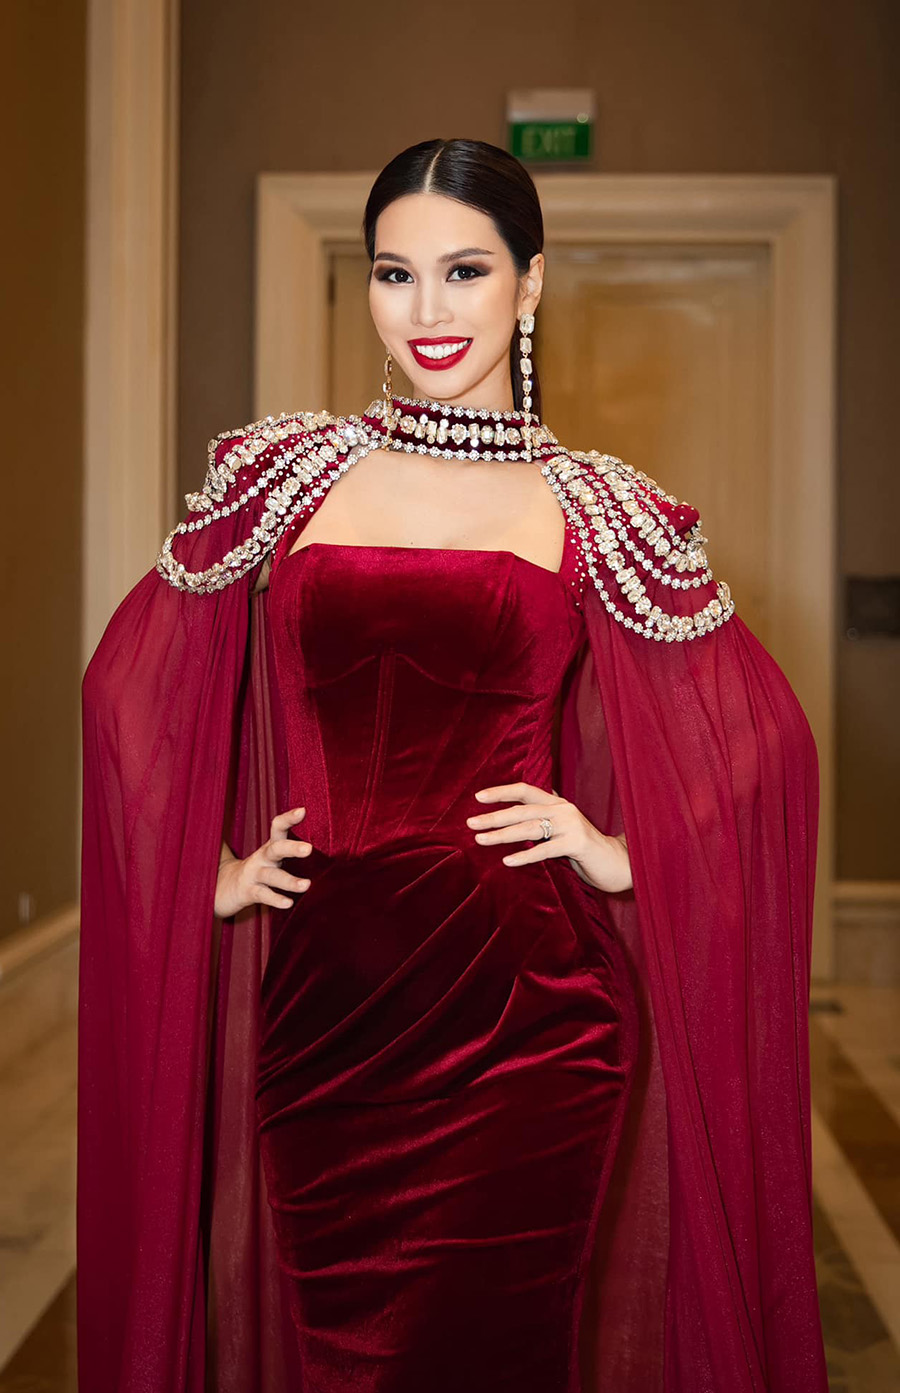 Khi đi xem show của nhà thiết kế Nguyễn Minh Tuấn hồi đầu tháng, người đẹp diện bộ váy dạ hội chất liệu nhung, nhấn bằng chiếc áo choàng đính đá phần cổ.